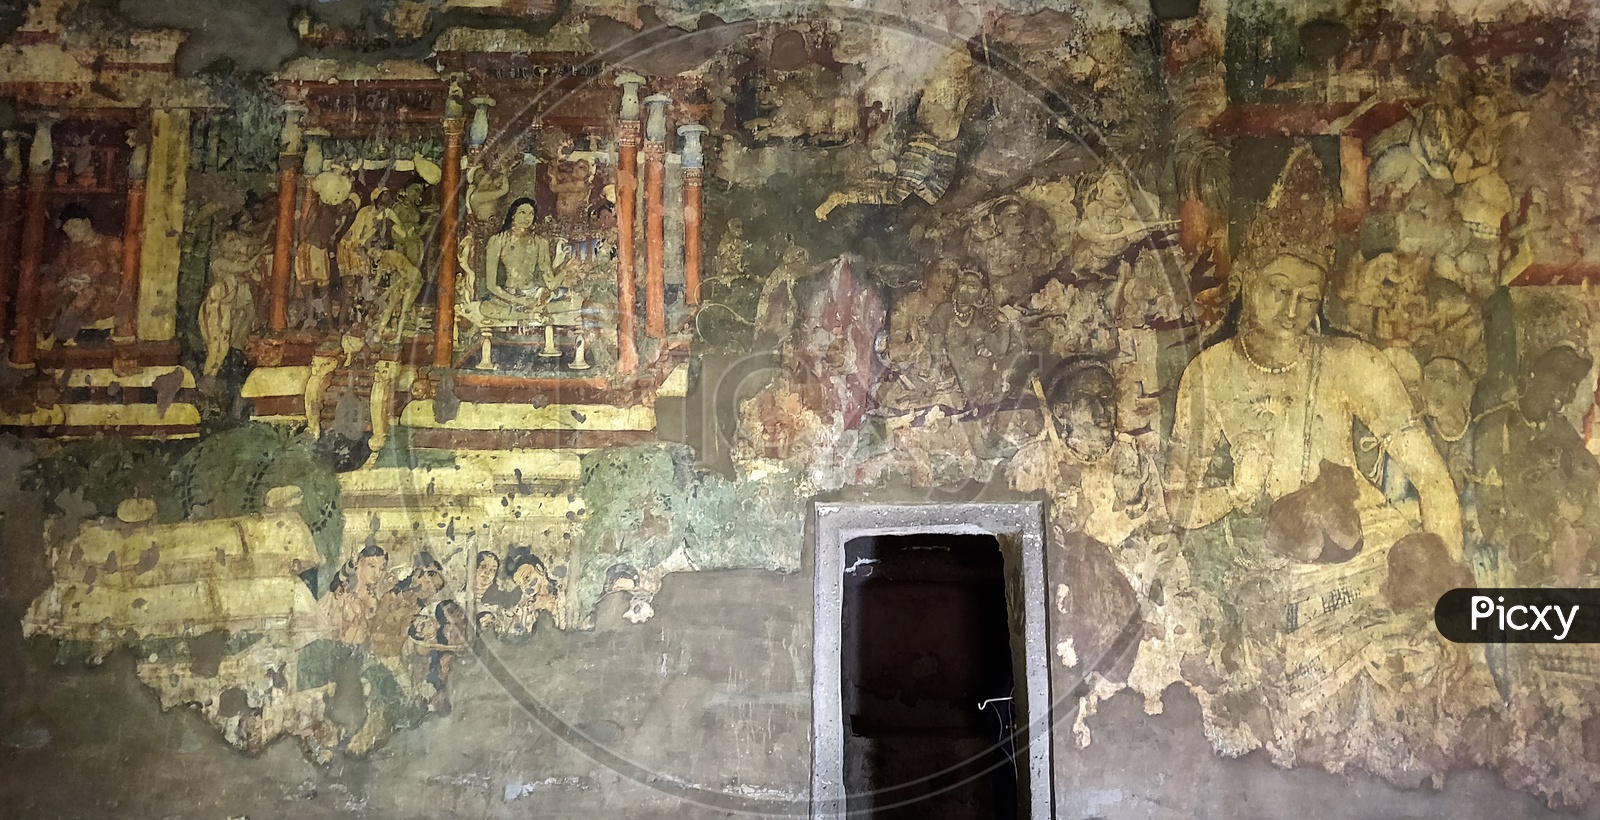 Ancient Wall Arts or Wall Paintings of Indian Civilization at Ajanta Caves